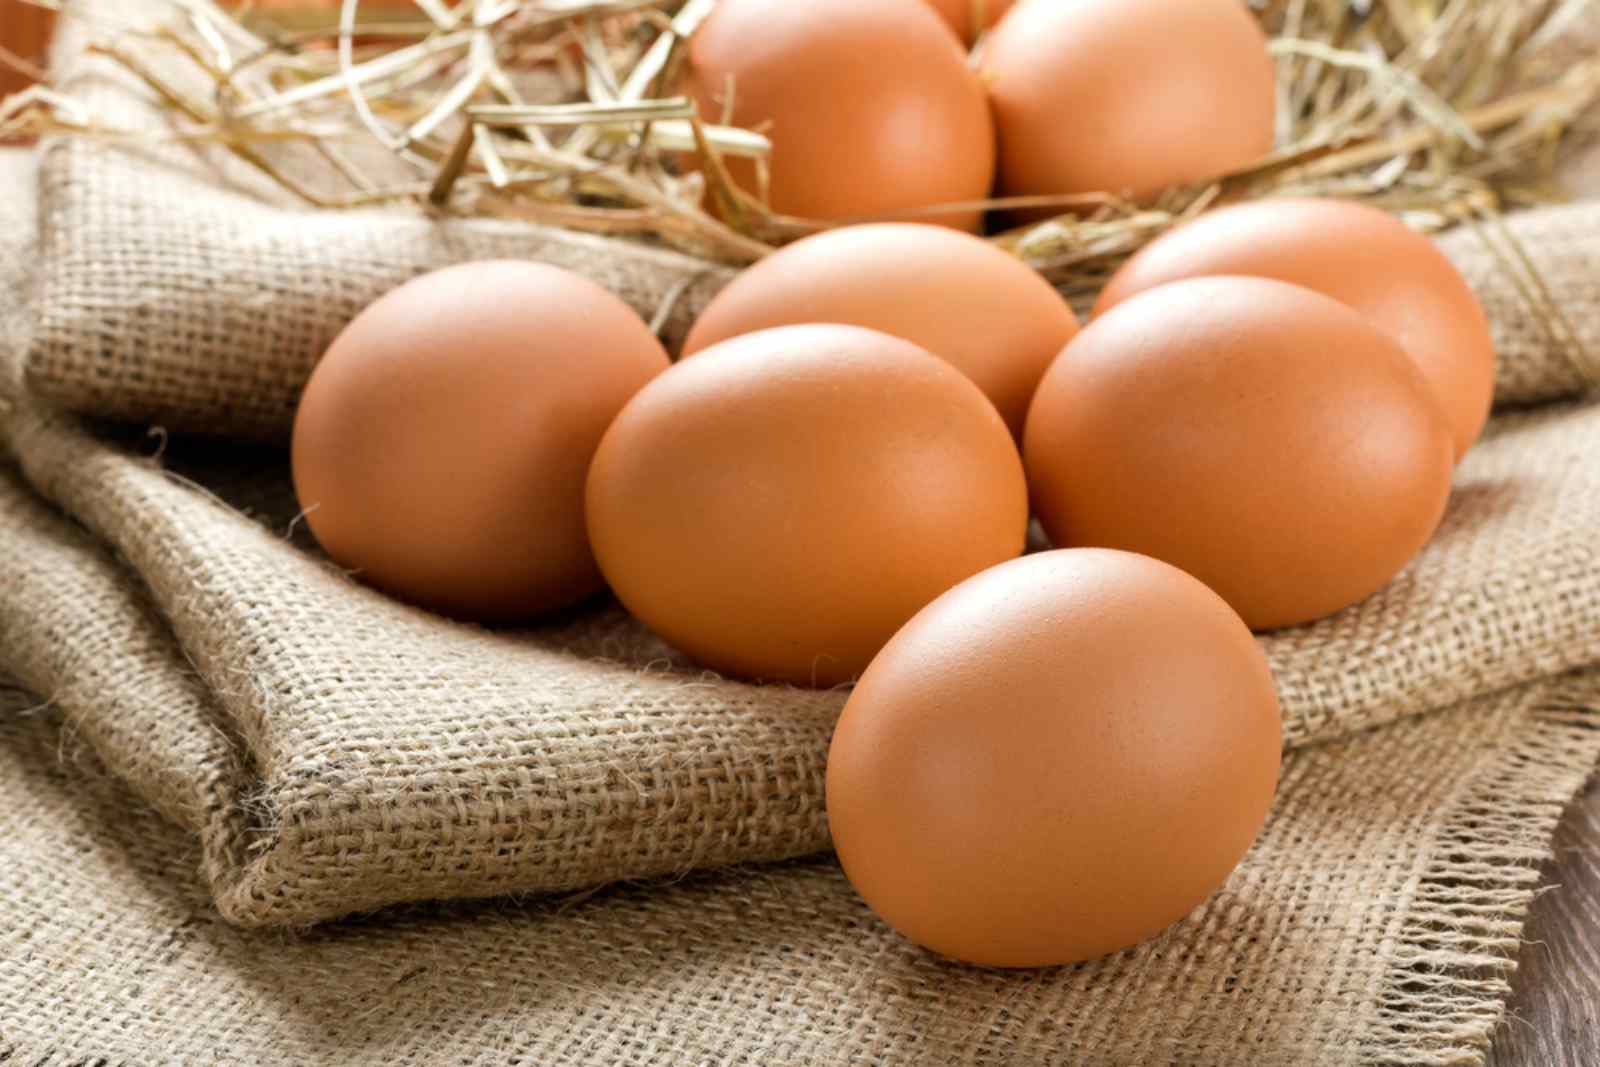 Trứng có những lợi ích to lớn trong phục hồi cơ bắp